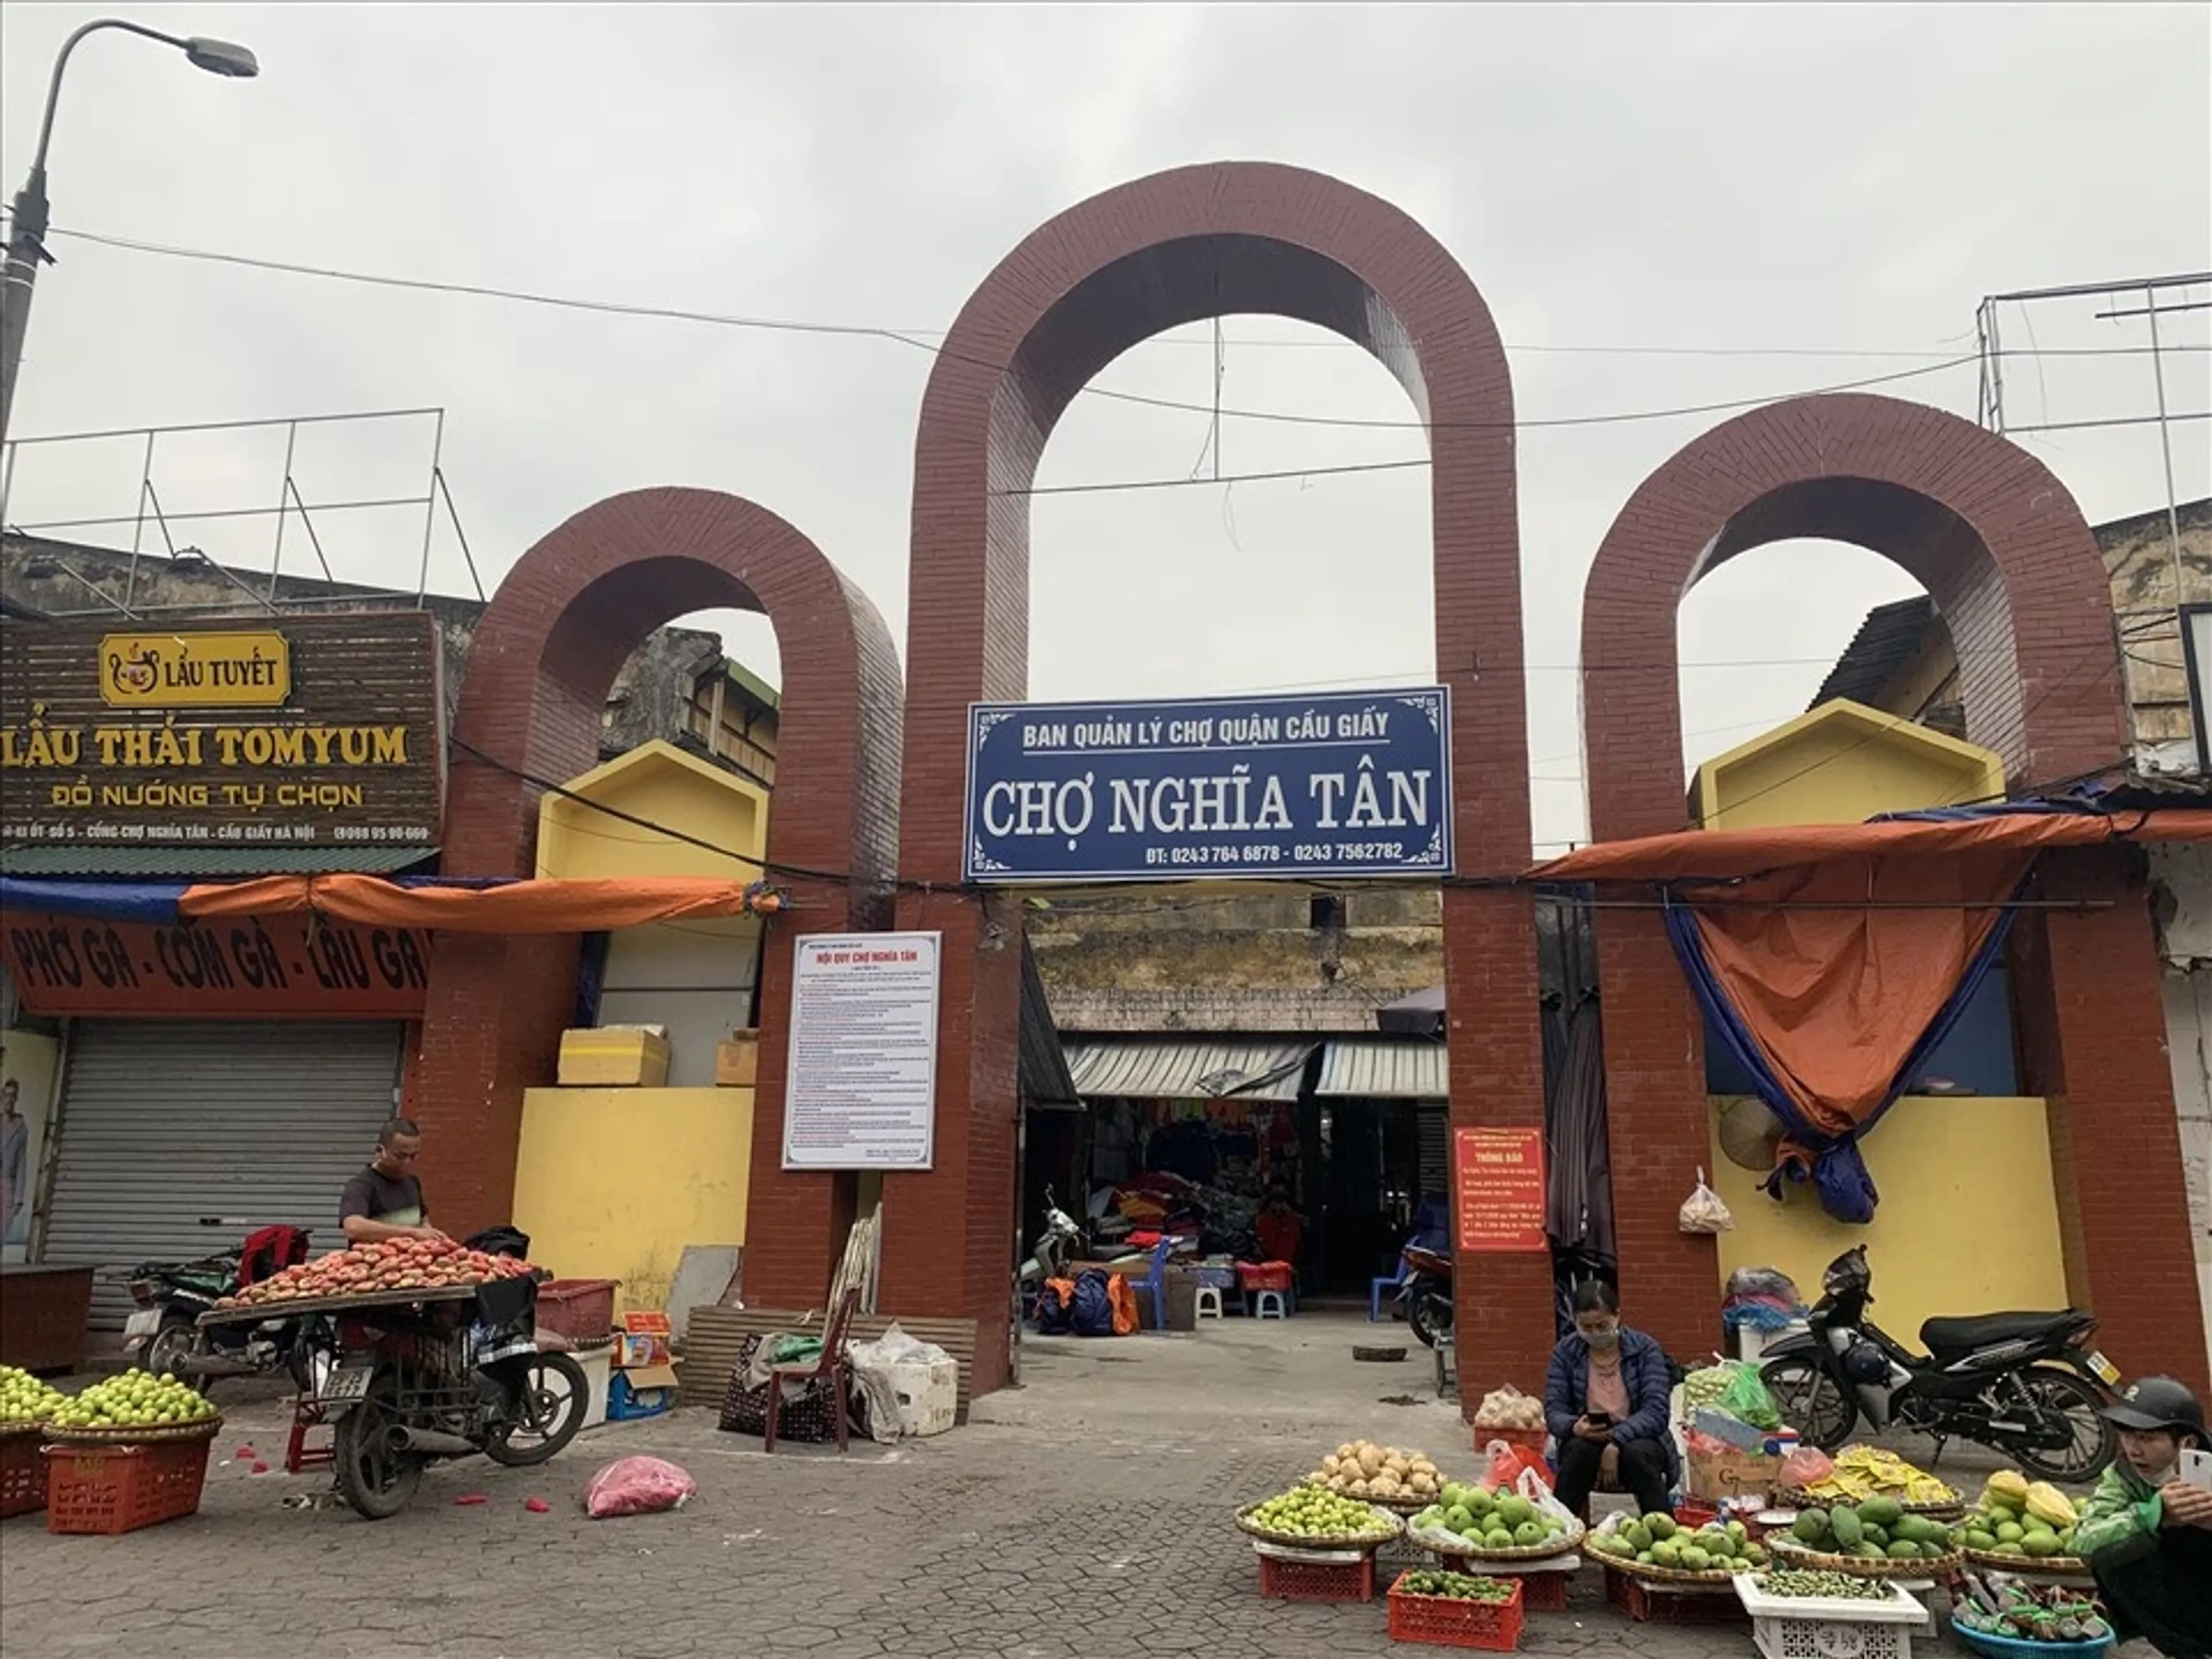 Chợ Nghĩa Tân – Nơi lưu giữ nét văn hóa và ẩm thực Hà Nội